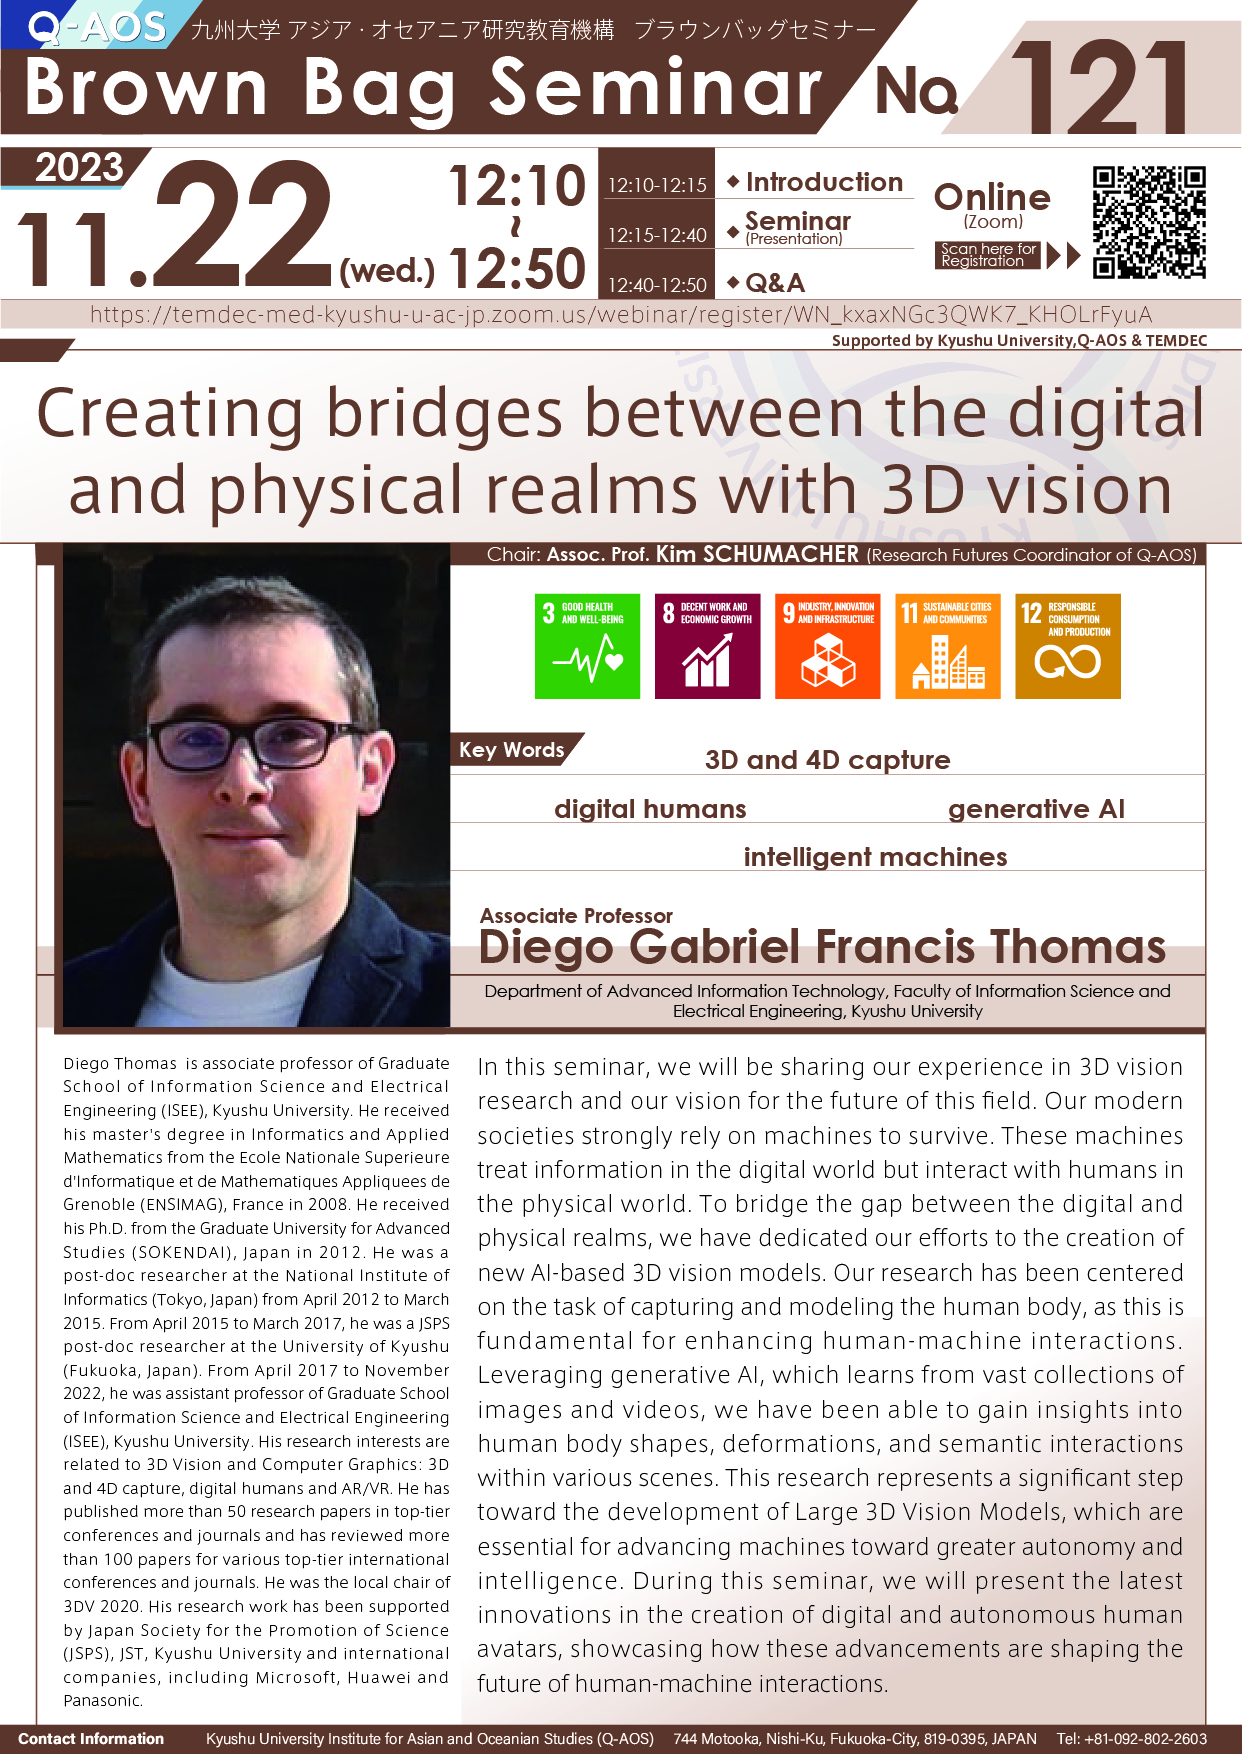 アイキャッチ画像：Q-AOS Brown Bag Seminar Series The 121th Seminar “Creating bridges between the digital and physical realms with 3D vision”